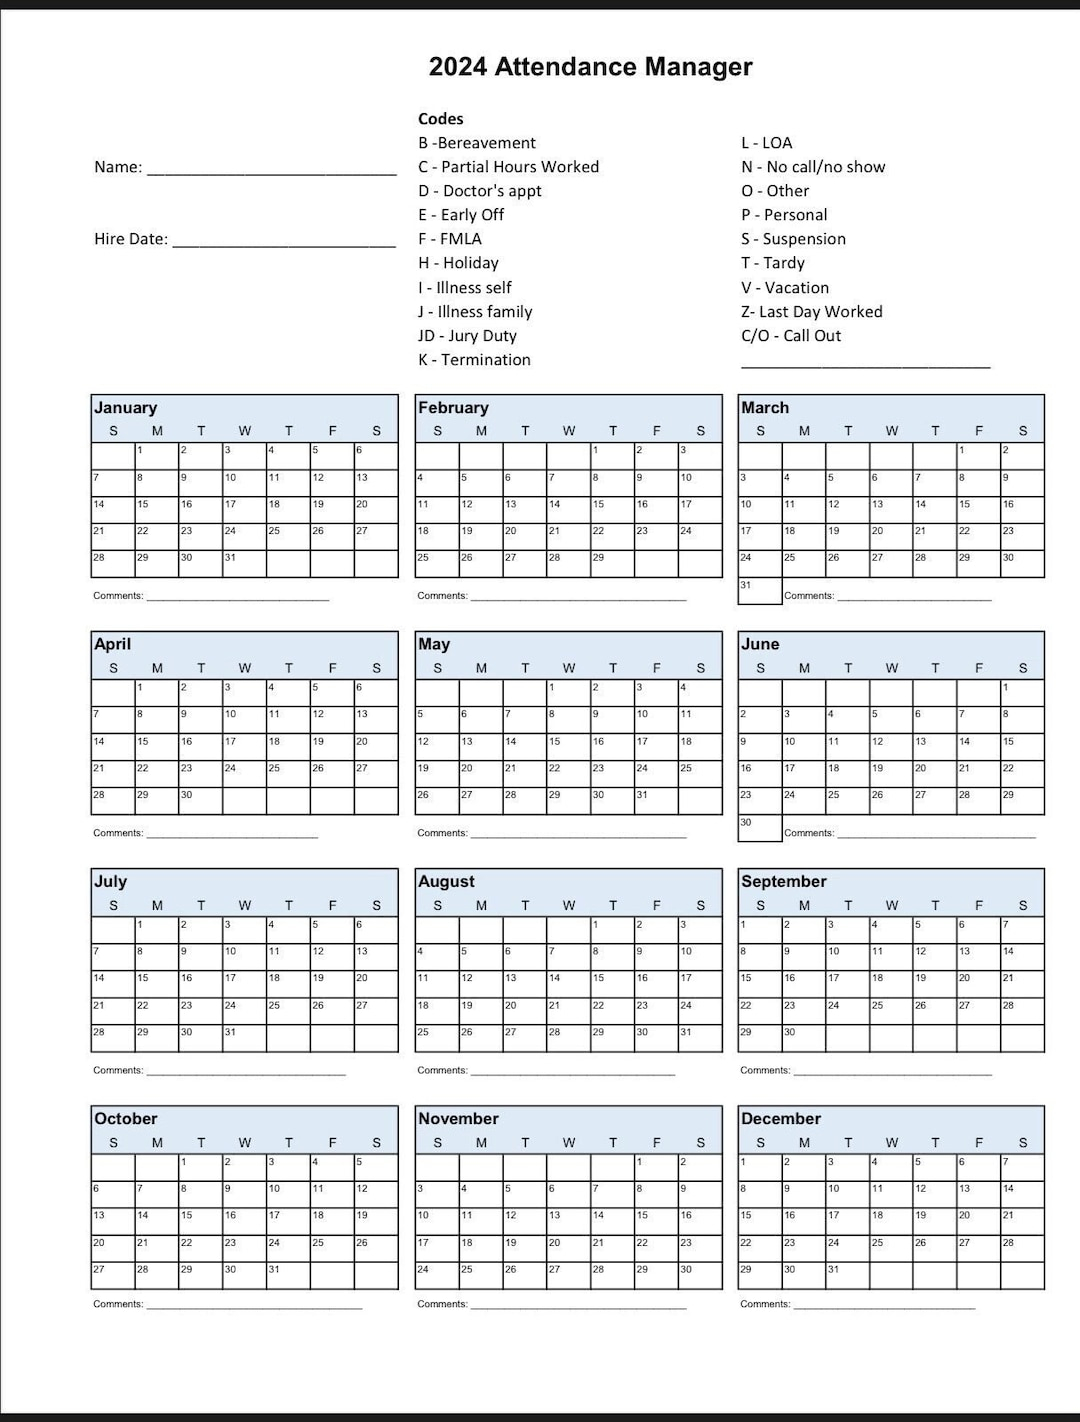 2024 Employee School Attendance Tracker Calendar, Employee for Attendance Calendars For 2024 Printable